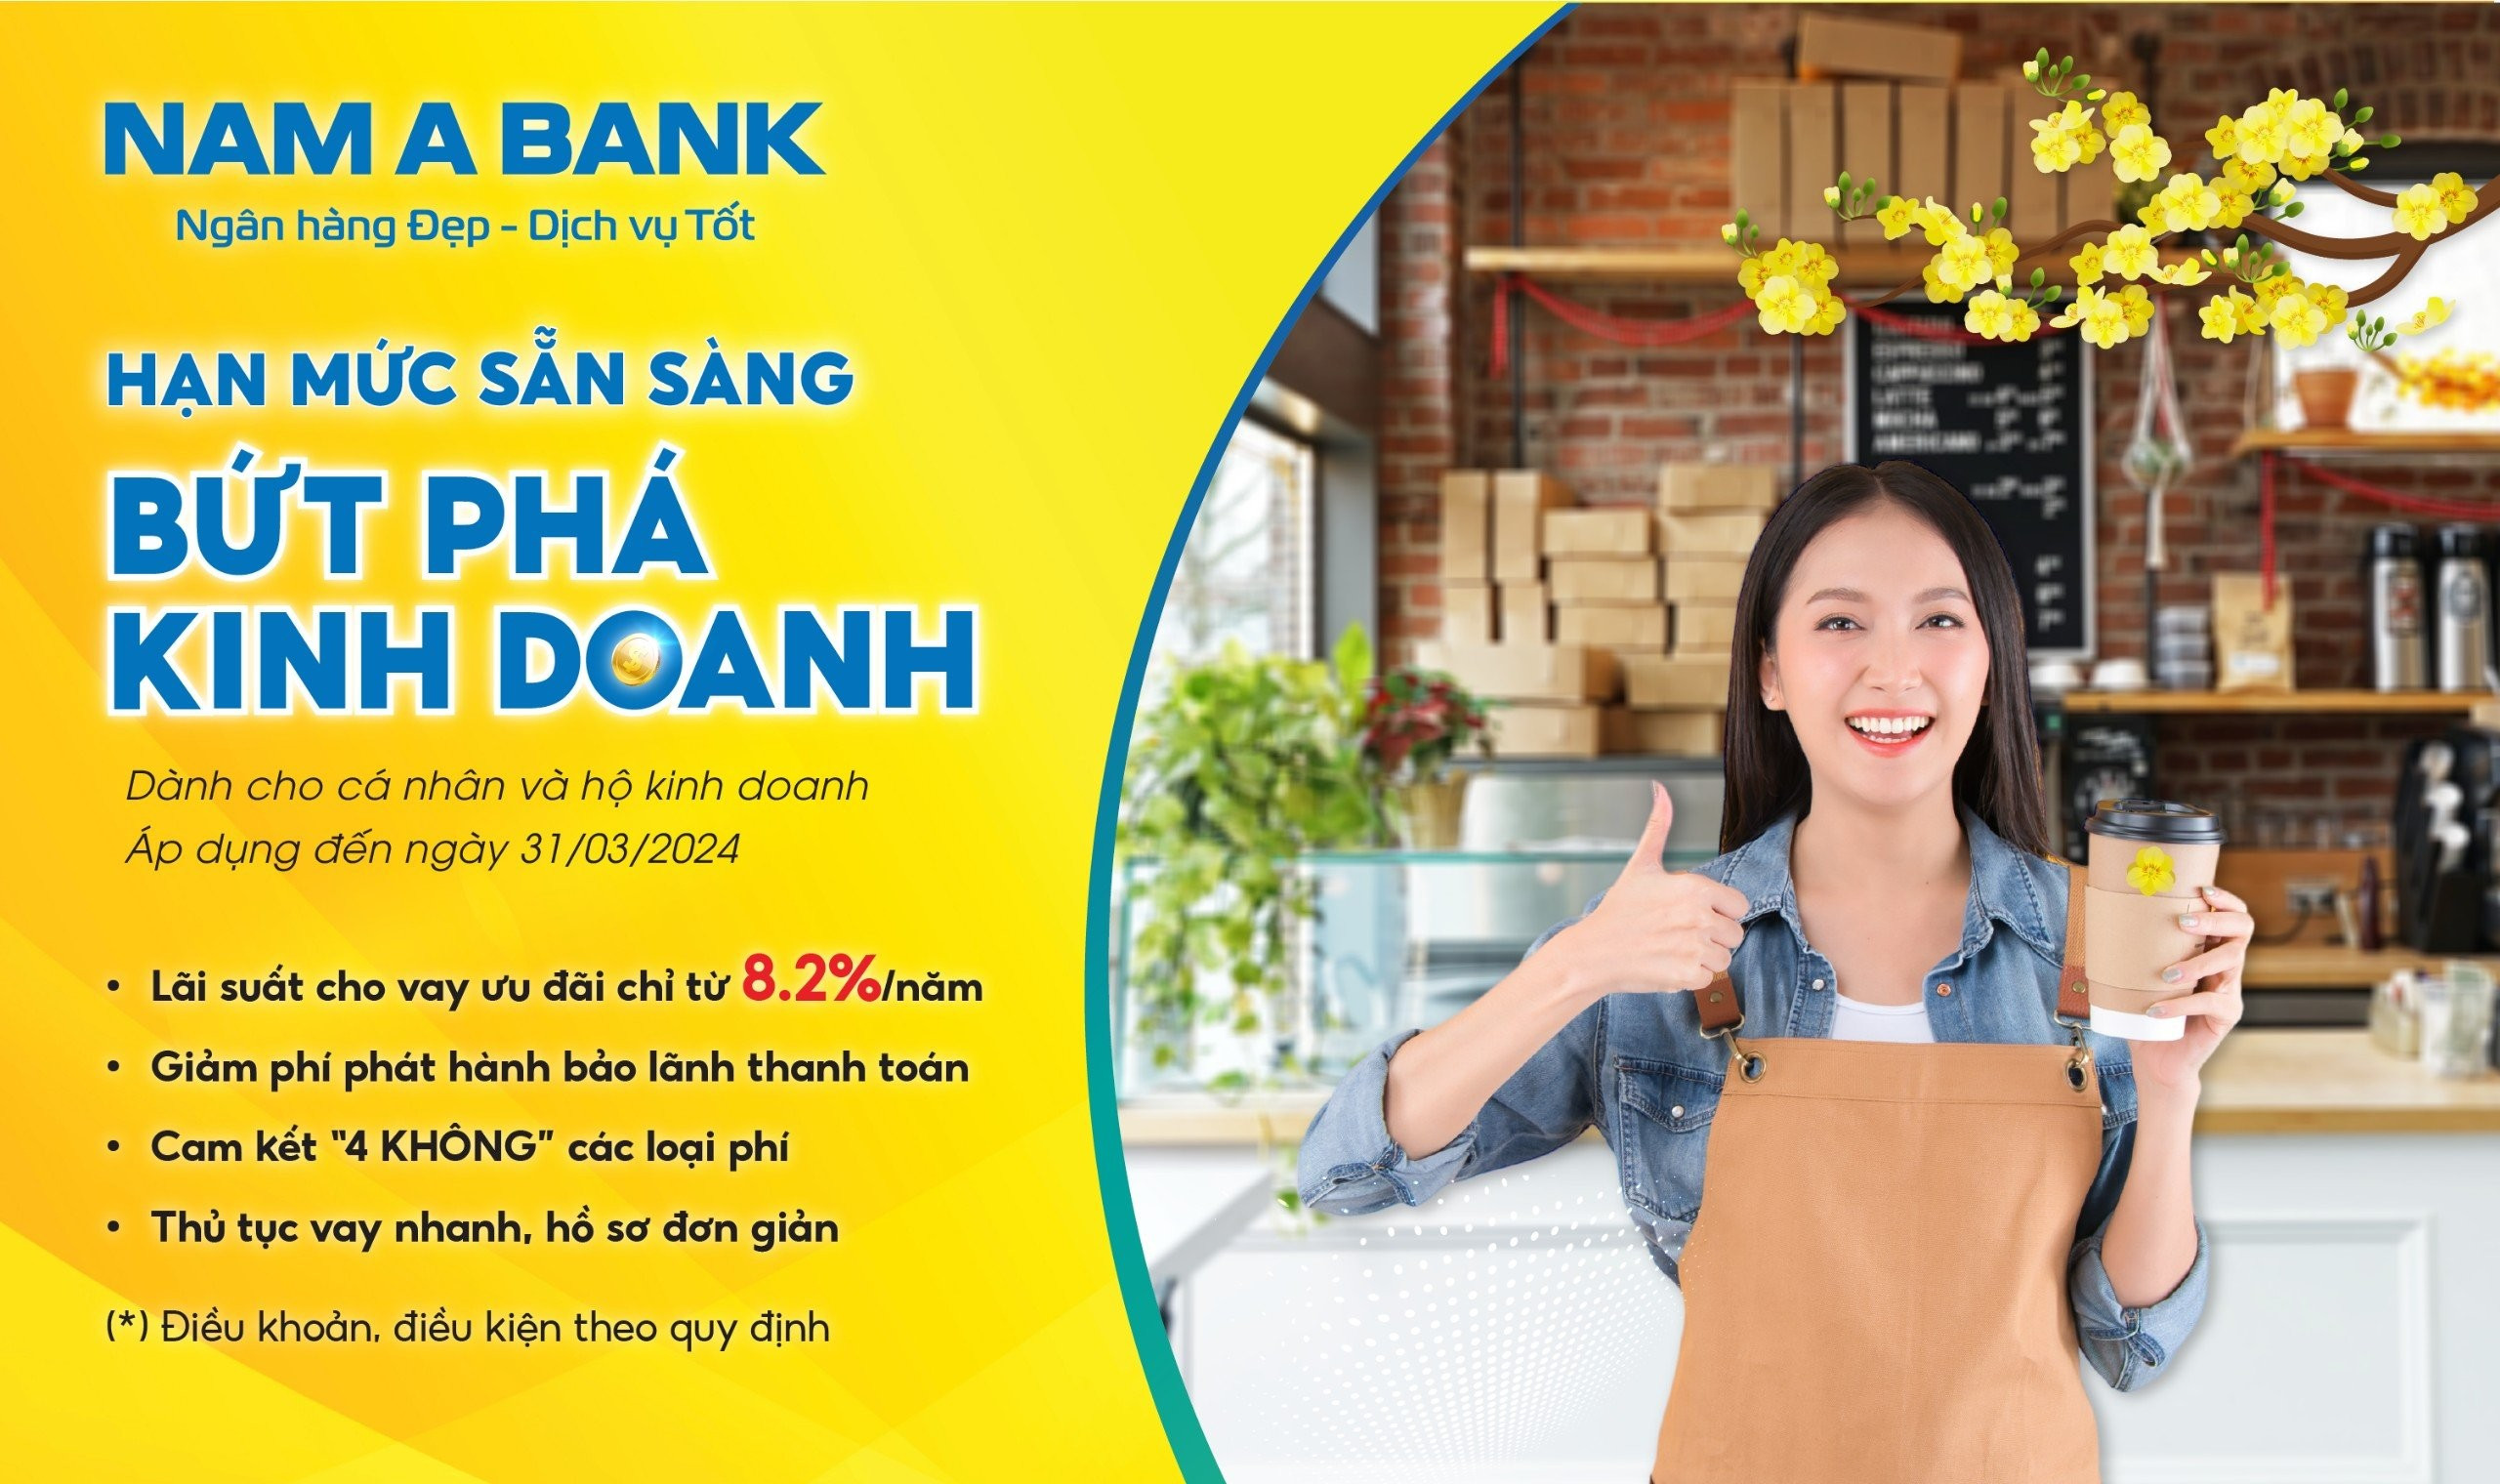 Nam A Bank triển khai chương trình cho vay ưu đãi “Hạn mức sẵn sàng – Bứt phá kinh doanh”